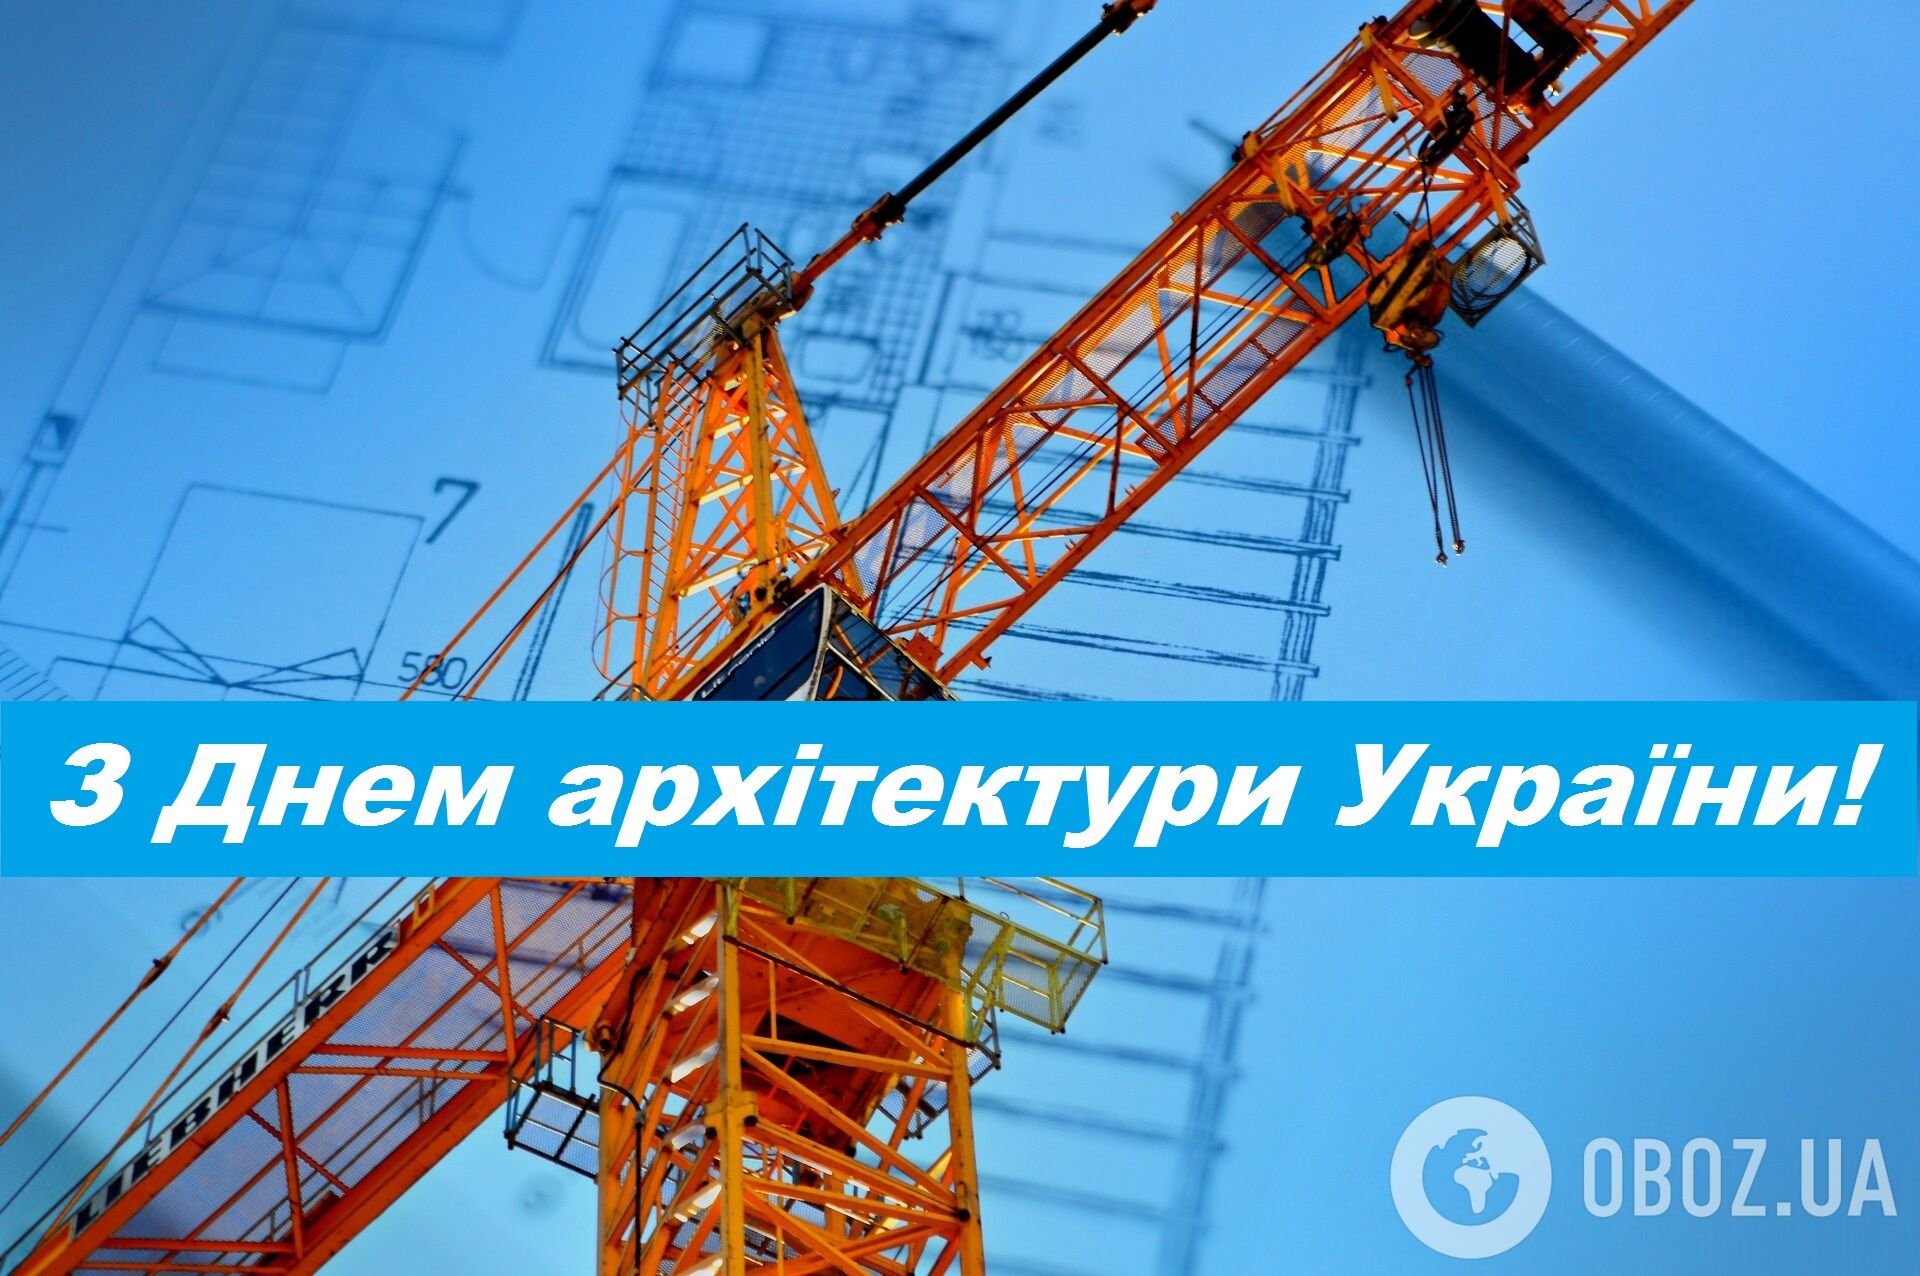 День архитектуры Украины был учрежден в 1995 году